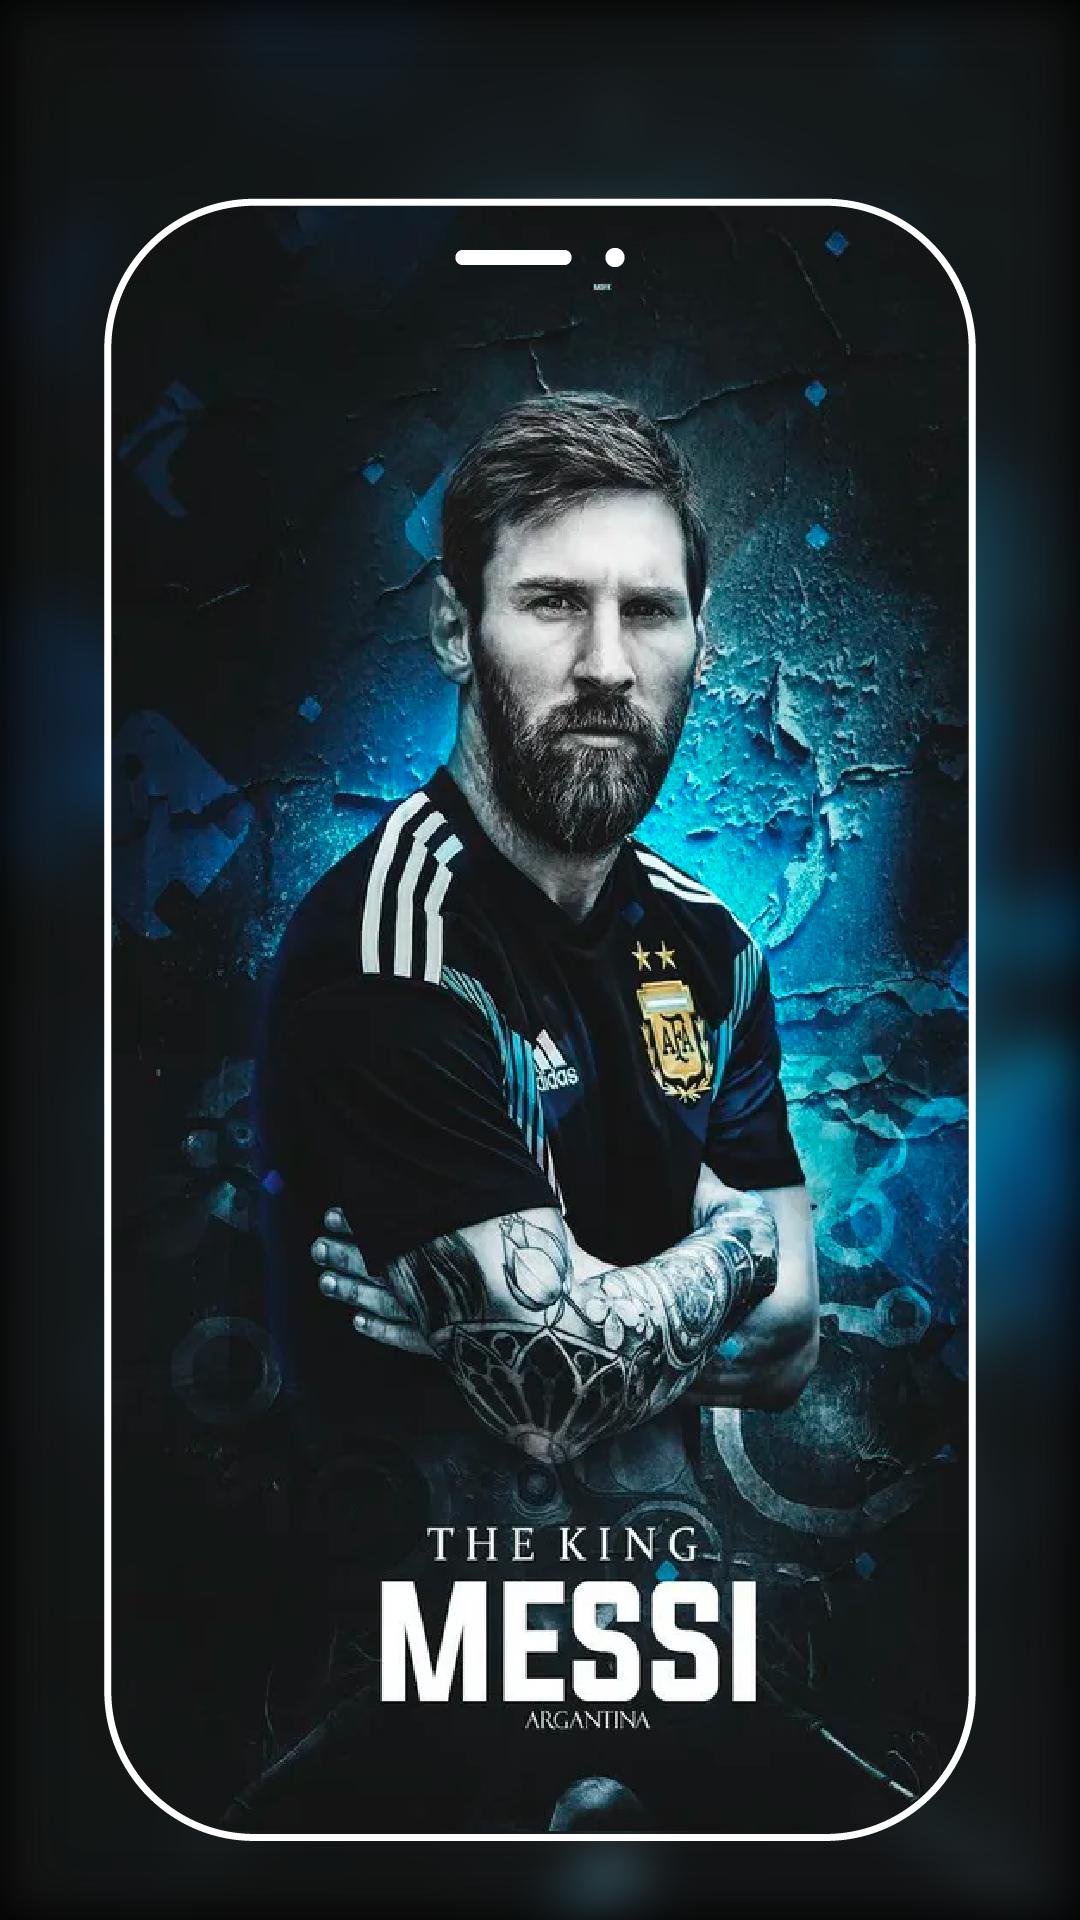 Messi không chỉ là 1 cầu thủ bóng đá, mà còn là một ngôi sao chân chính của môn thể thao này. Nếu bạn là một người yêu Messi, đừng bỏ lỡ những bức ảnh 4k đẹp mắt nhất.